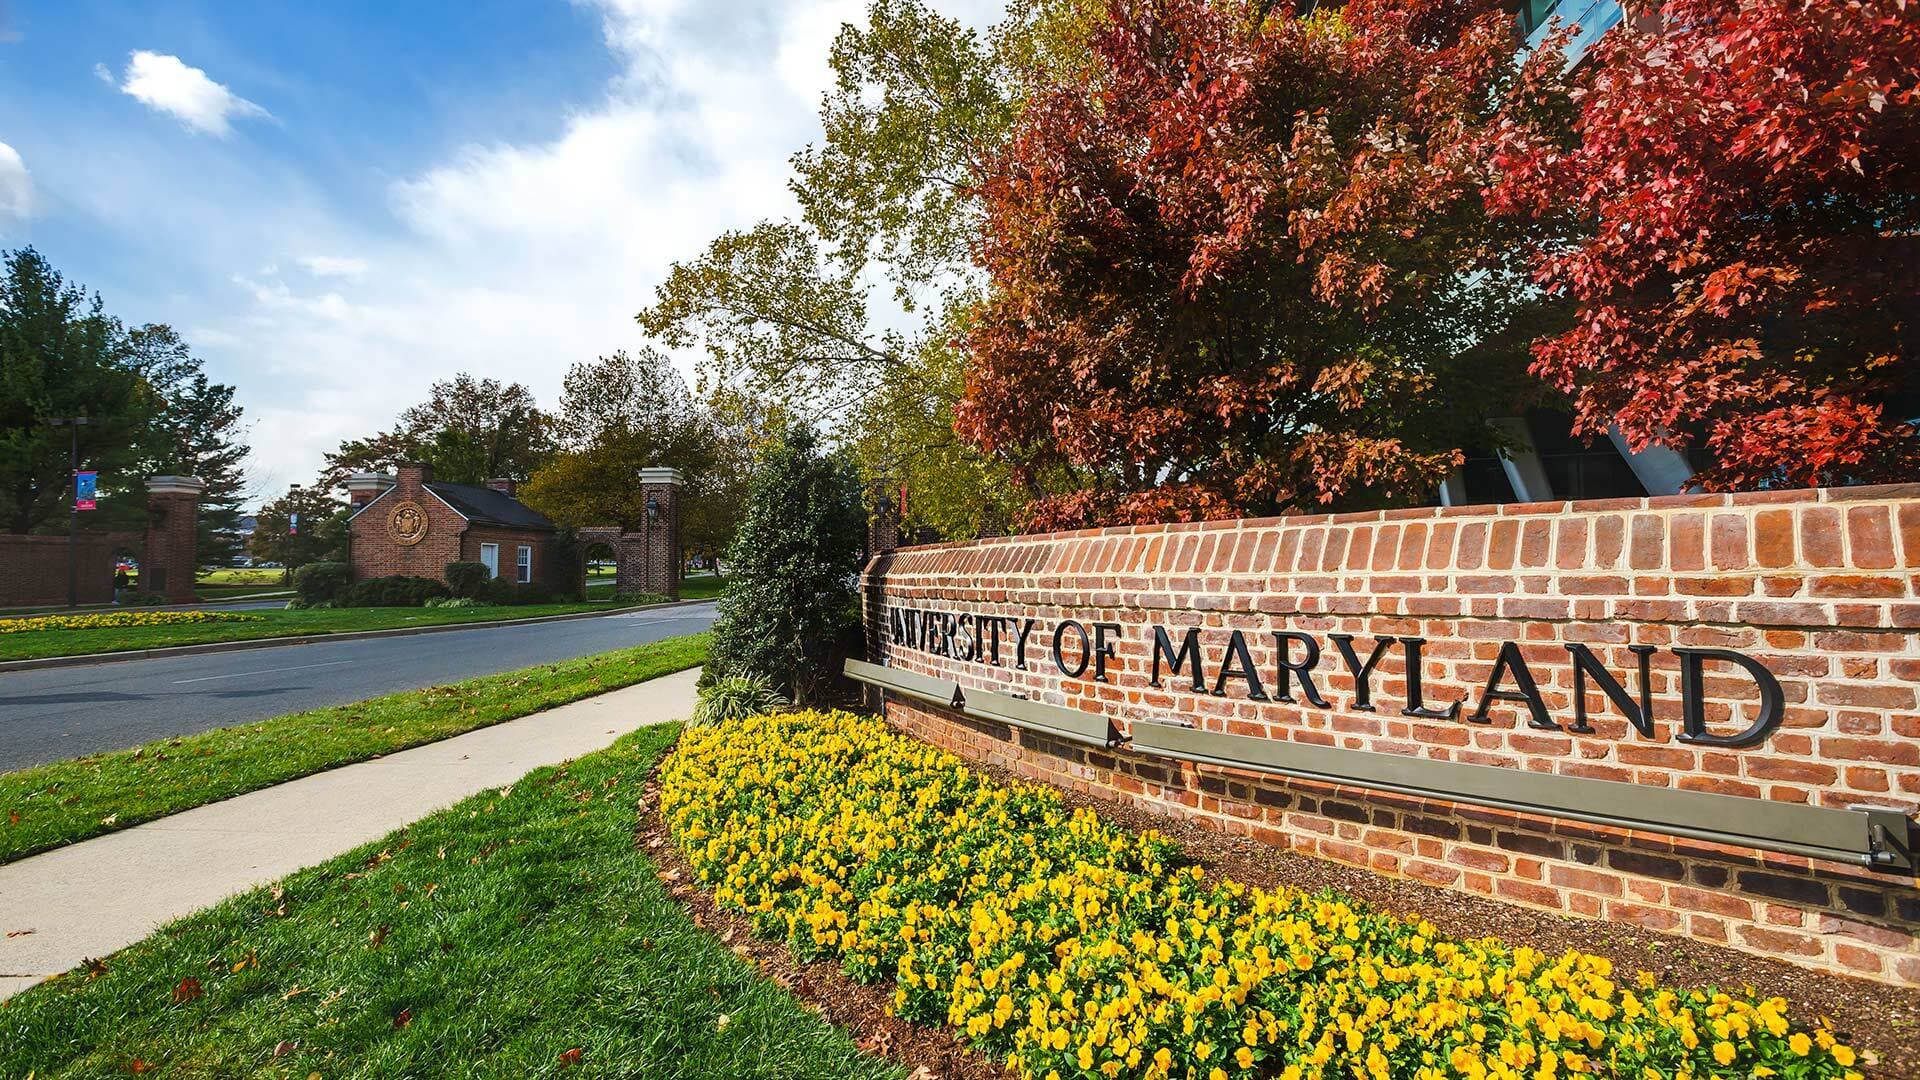 University of Maryland gate